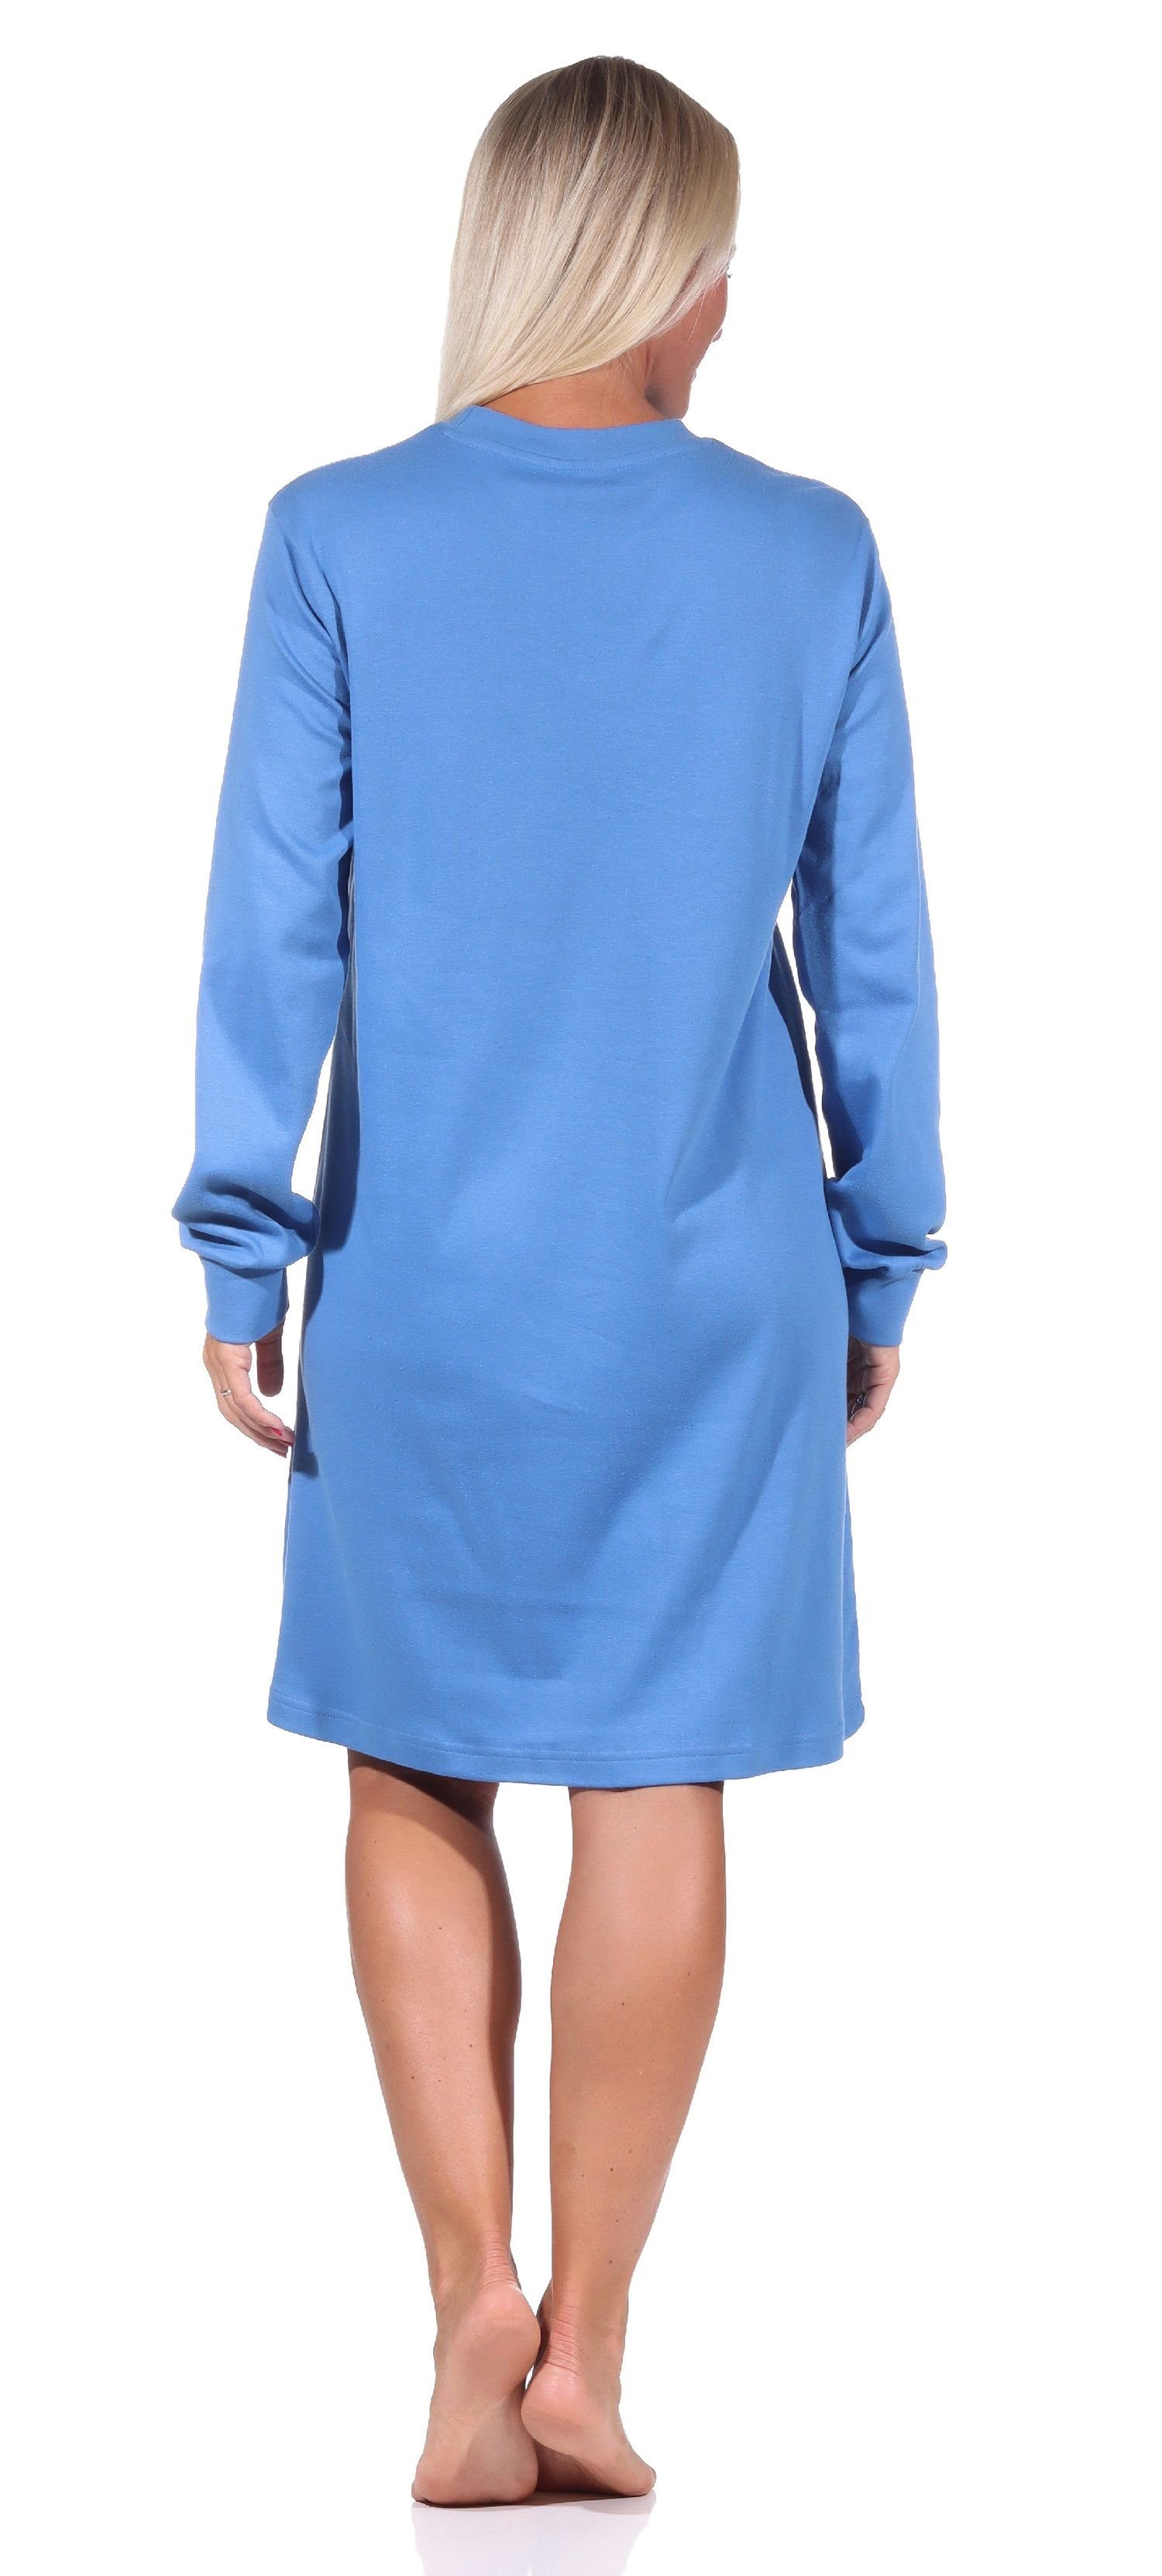 Kuschel Nachthemd blau Normann Nachthemd Bündchen Sterne + mit langarm Damen Motiv Interlock